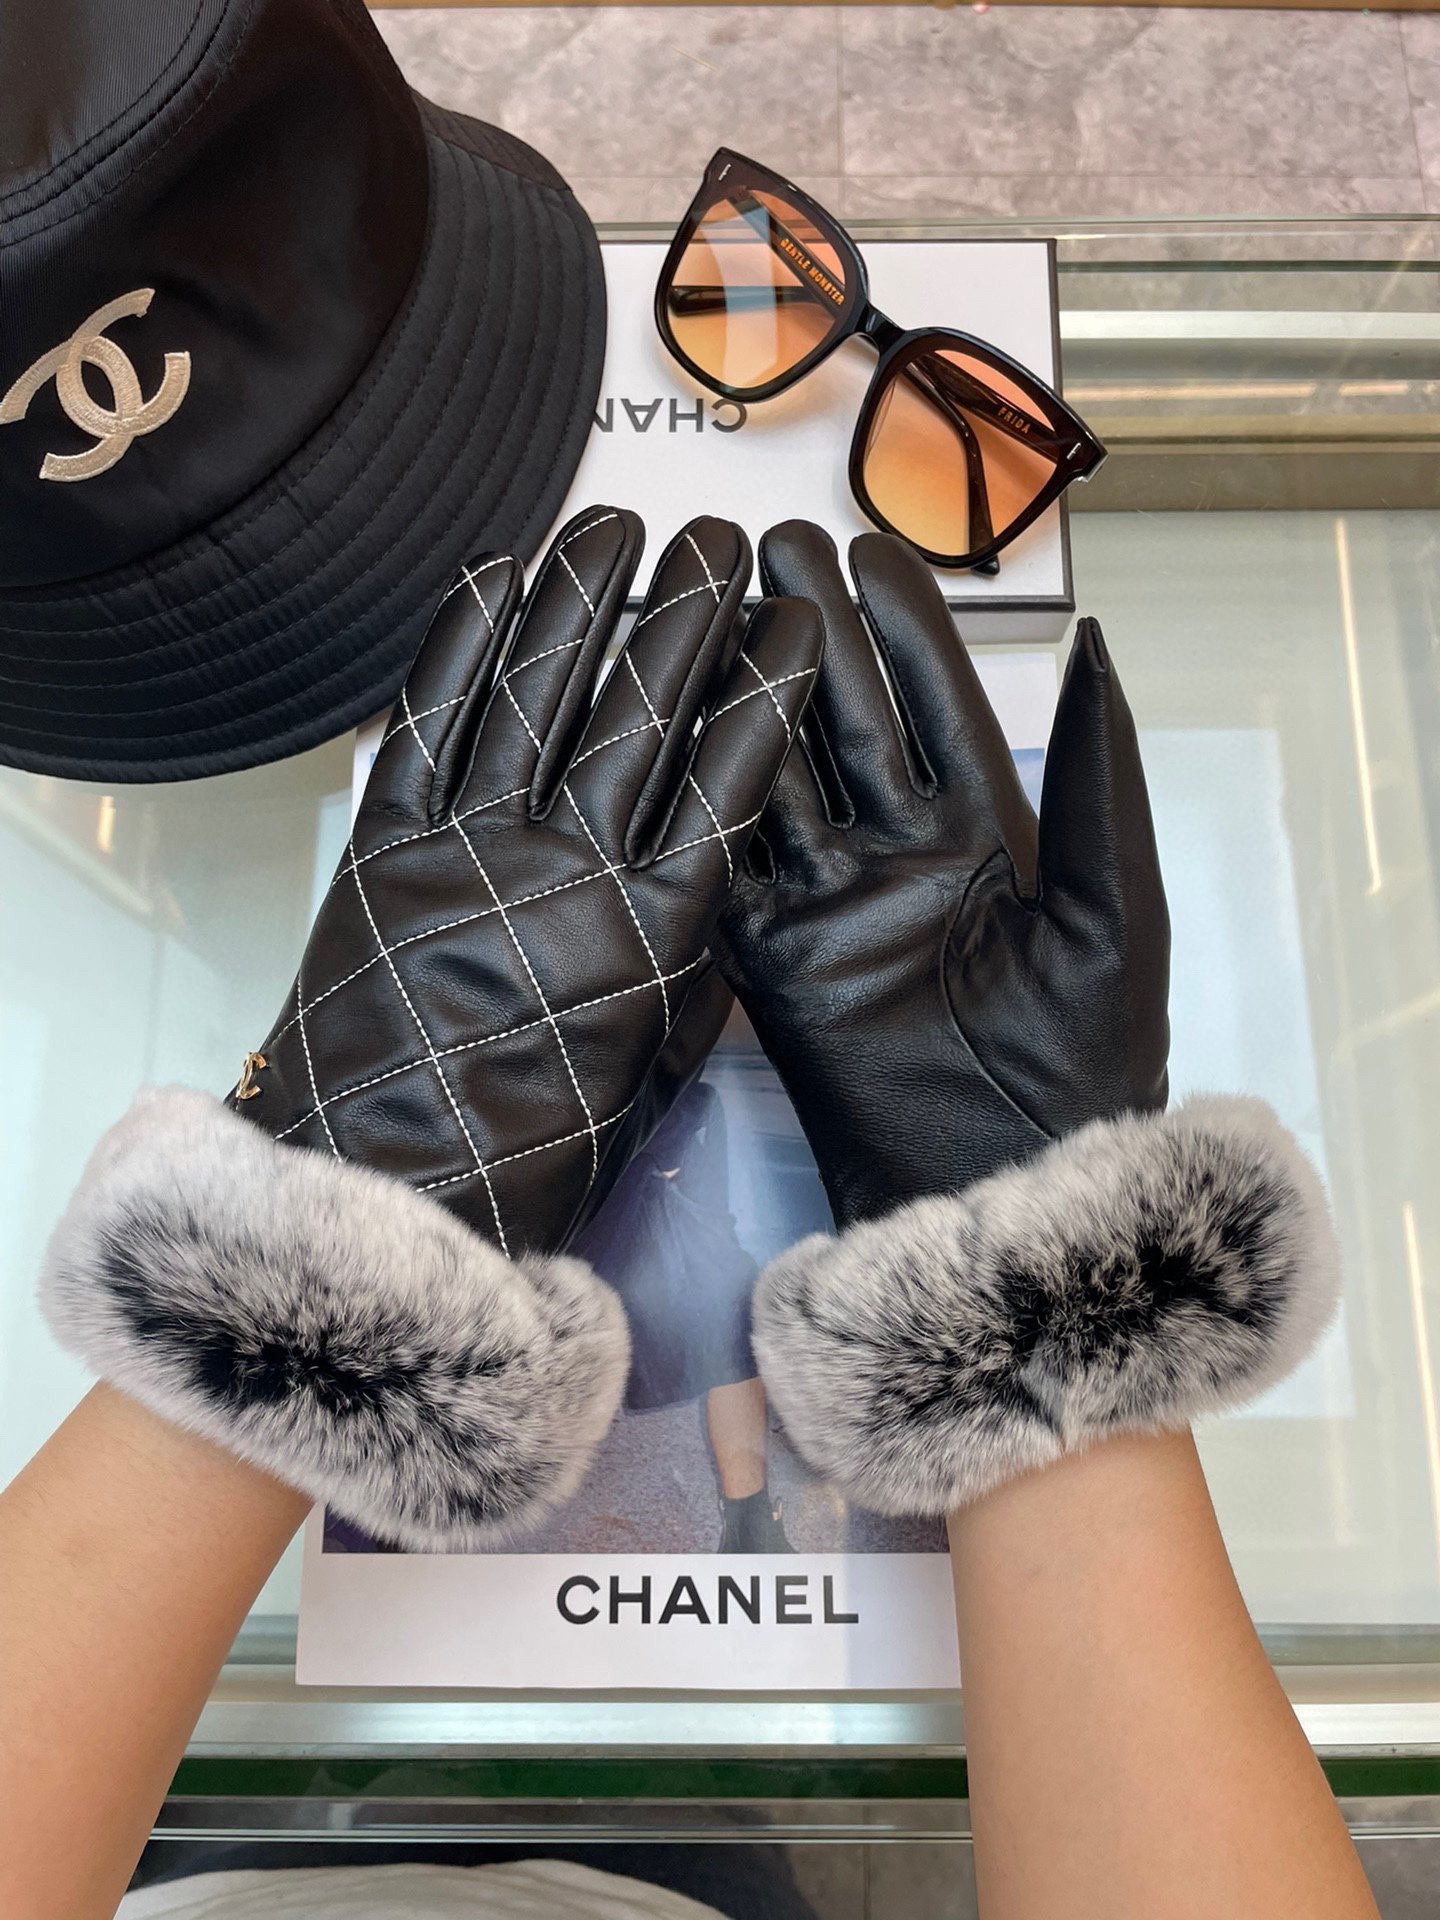 Chanel新款女士手套一级羊皮皮质超薄保暖舒适柔软舒适特显手型质感超群码数均码